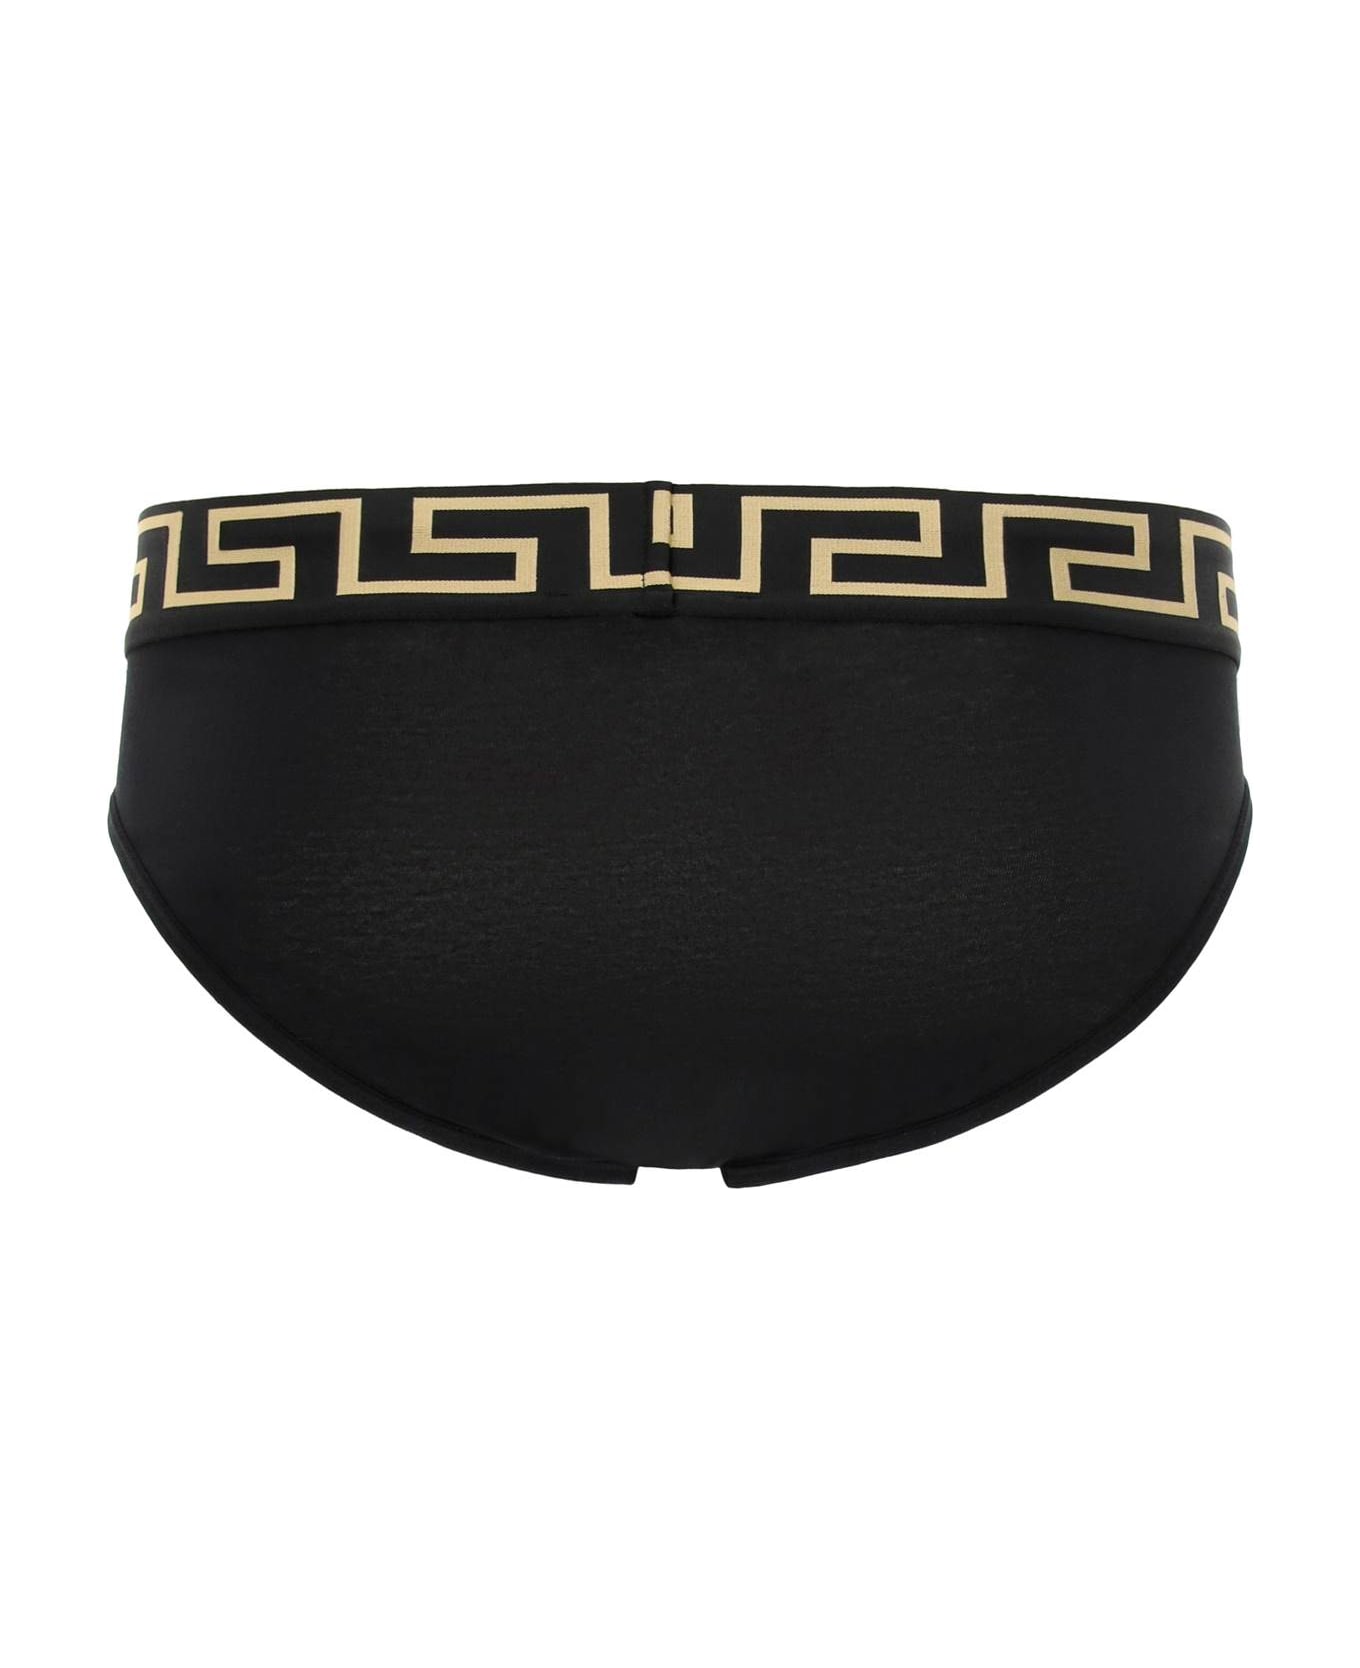 Versace Underwear Briefs Tri-pack - BLACK GOLD GREEK KEY (Black)